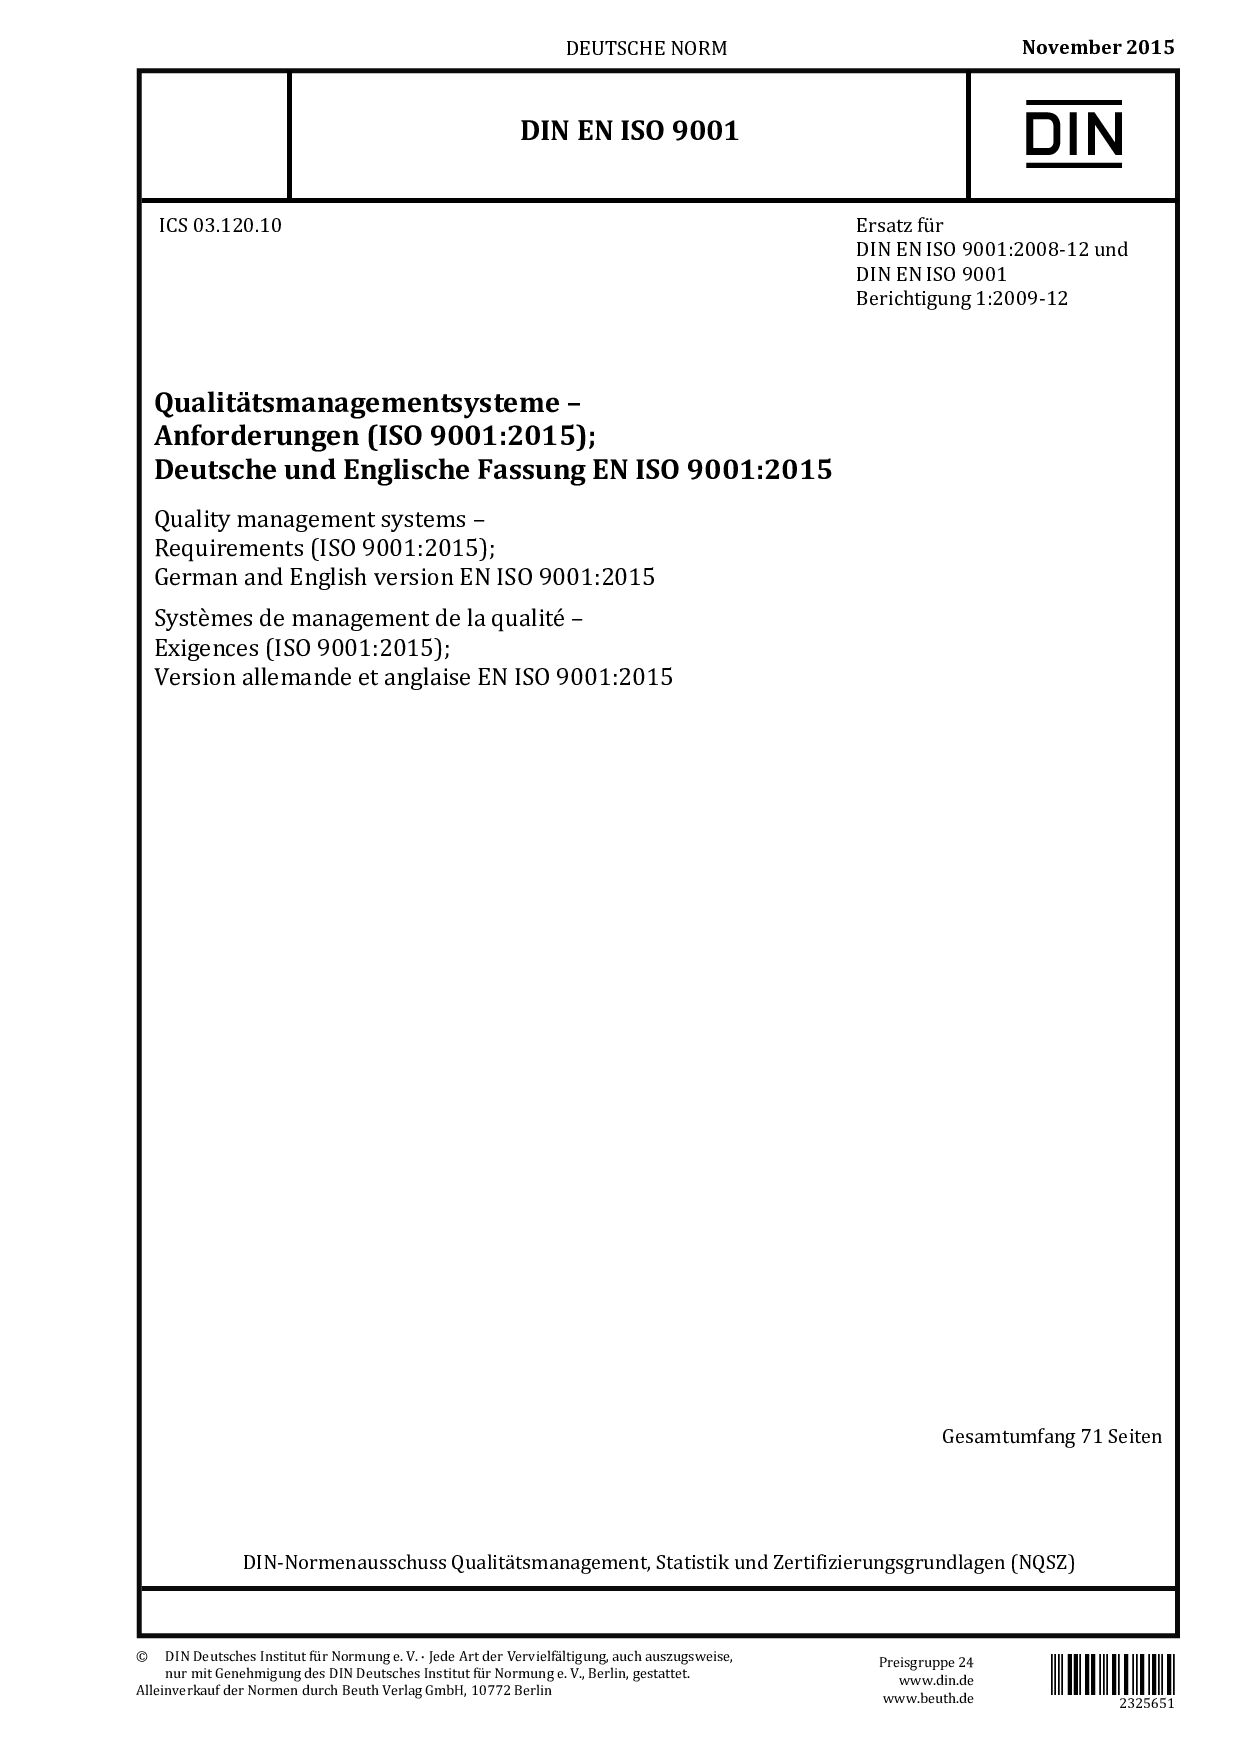 DIN EN ISO 9001:2015-11